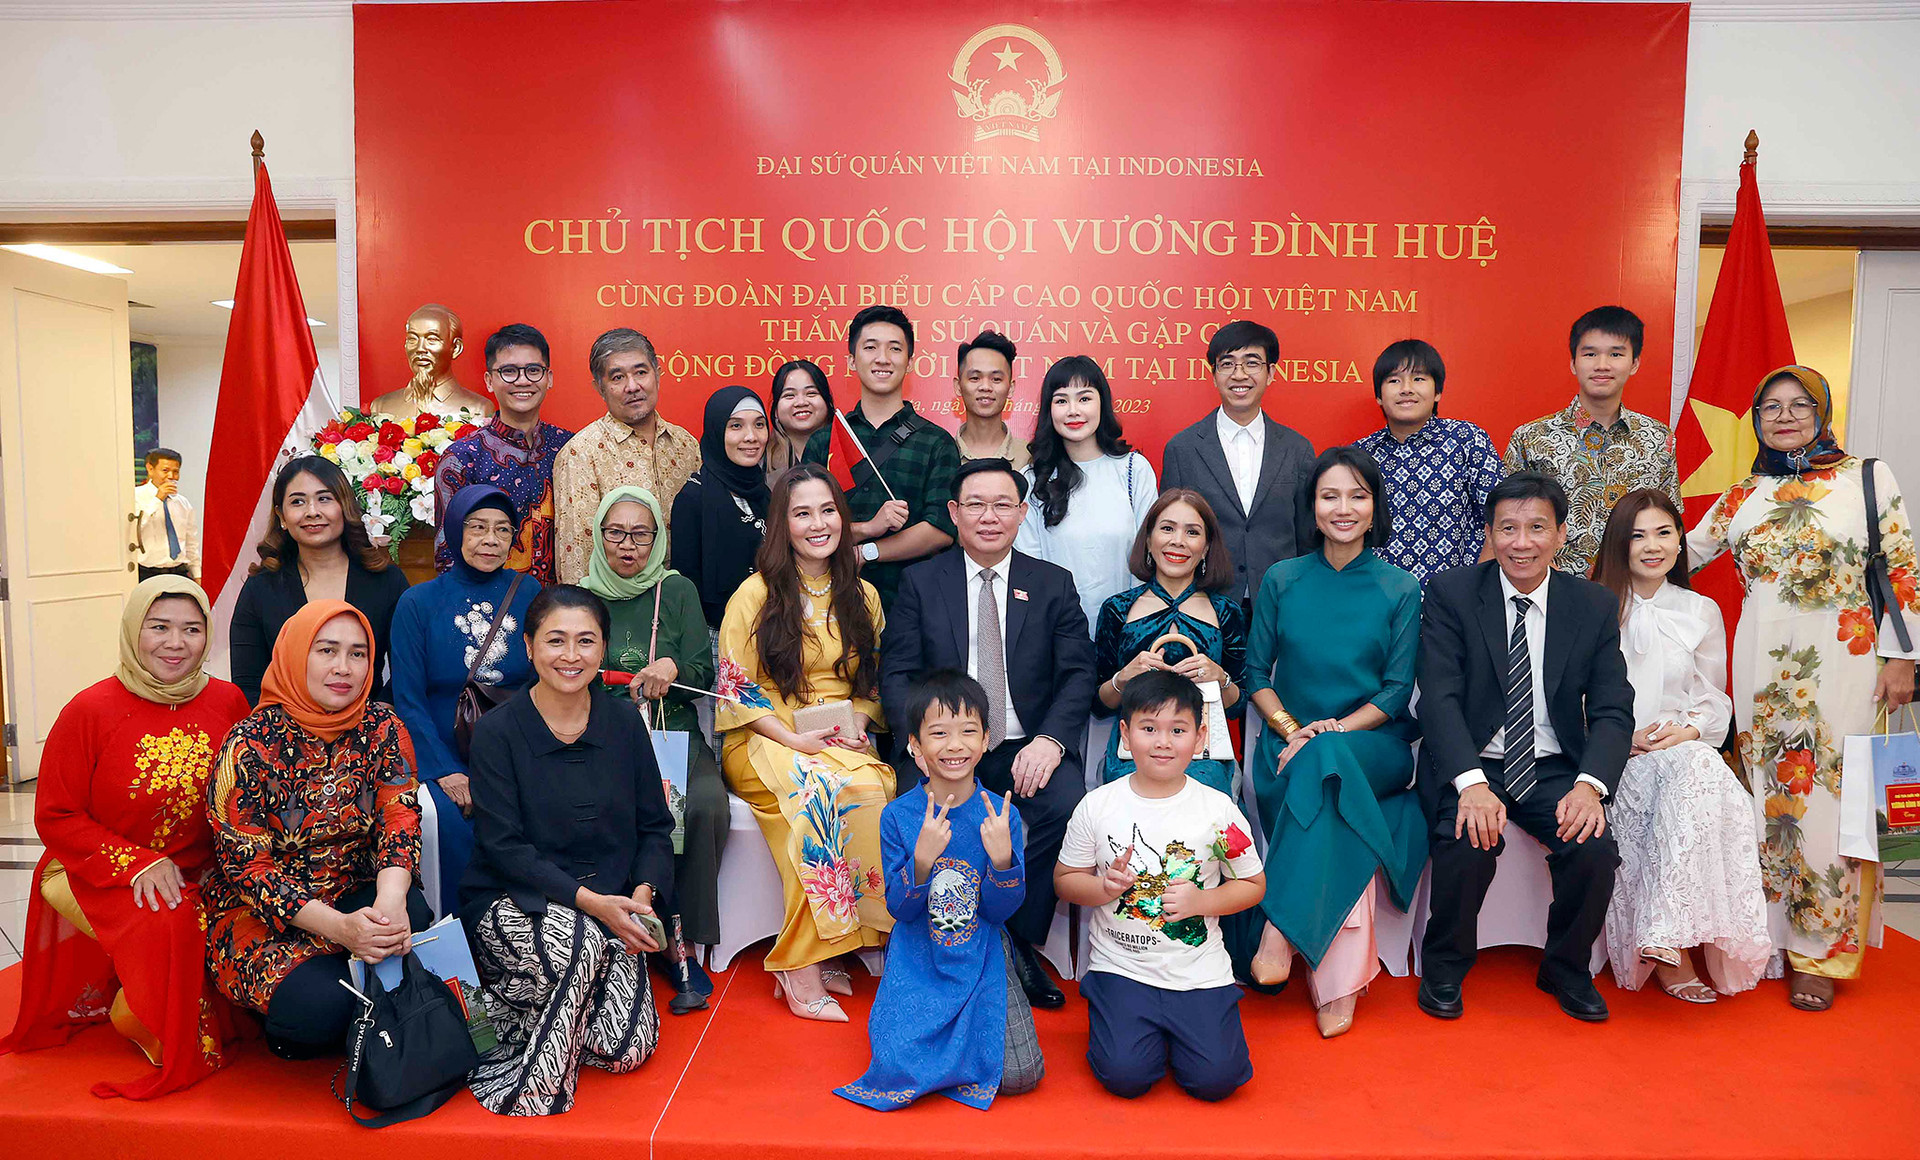 Chủ tịch Quốc hội Vương Đình Huệ: Phát huy vai trò cầu nối, đóng góp thiết thực cho quan hệ Việt Nam - Indonesia -7